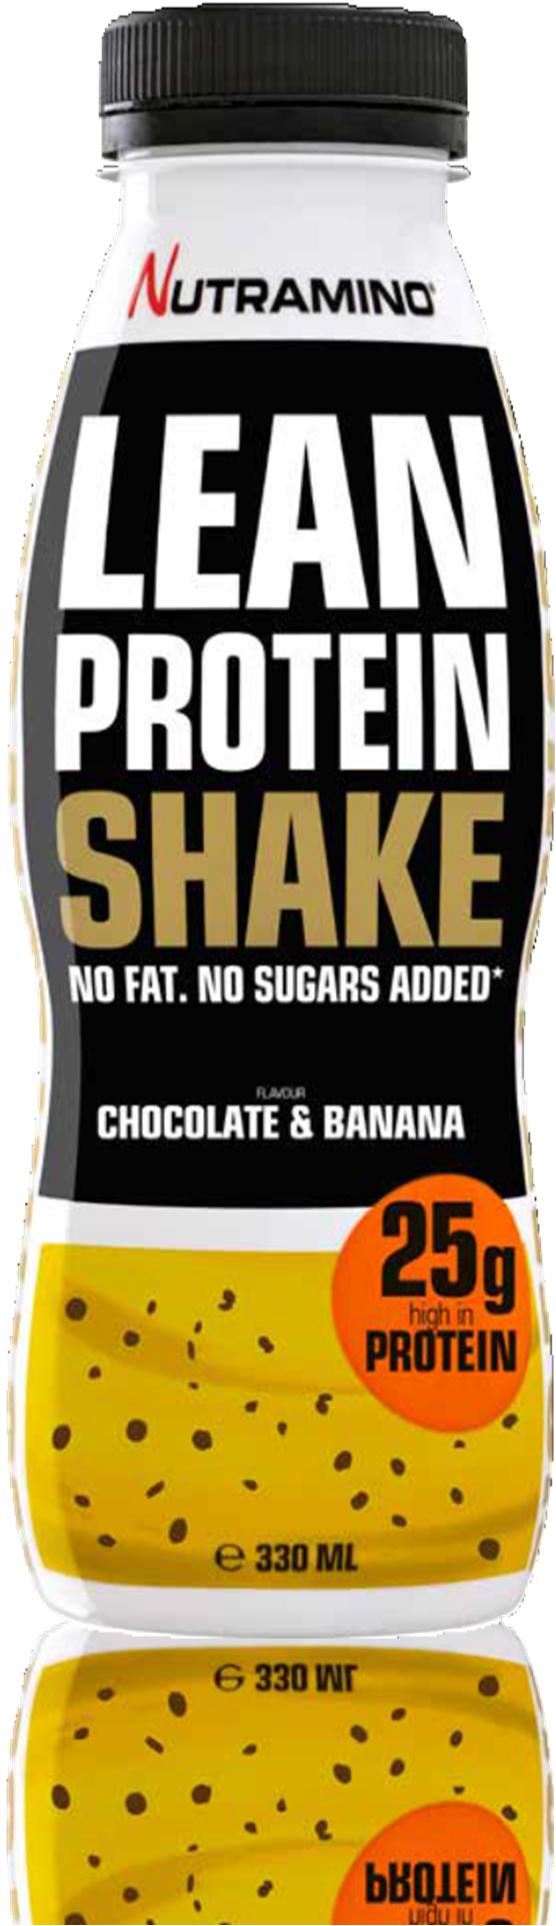 LEAN PROTEIN SHAKE CHOCOLATE & BANANA 330 ml Nutramino Lean Protein Shake on maailman herkullisin dieettishake. Se sisältää 25 g proteiinia, joka auttaa tukemaan lihasten palautumista.